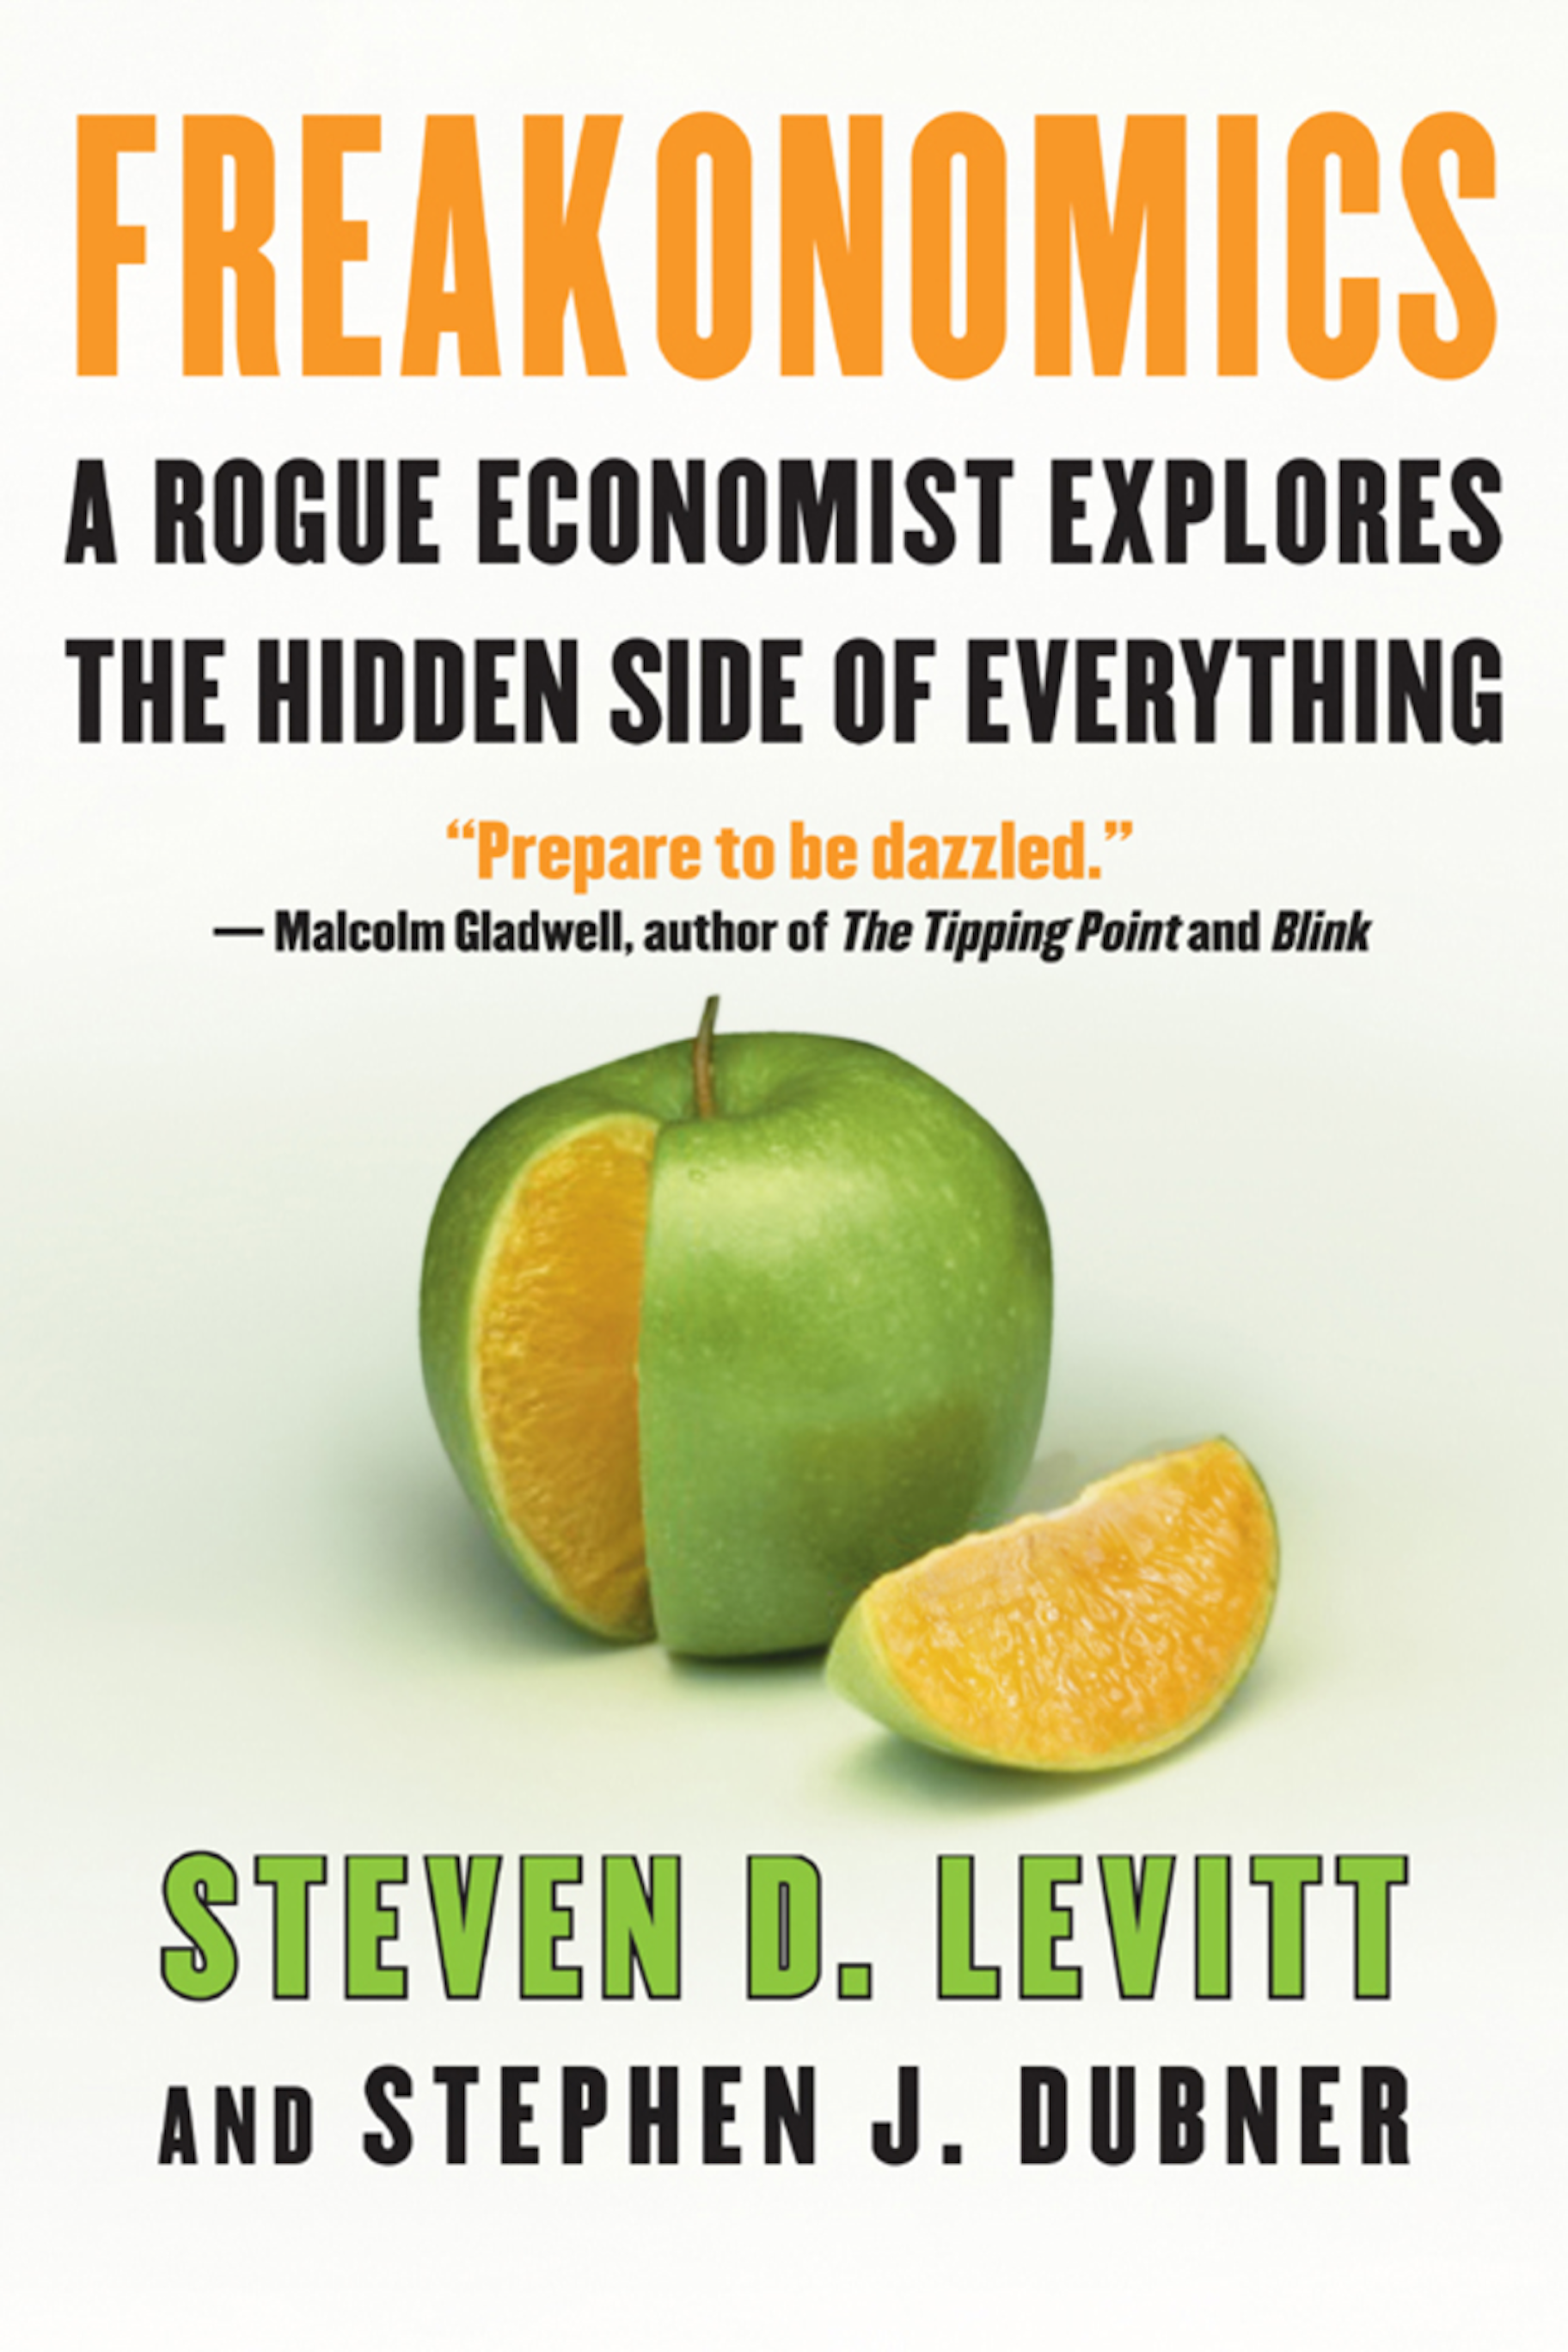 Freakonomics - Steven D. Levit and Stephen J. Dubner